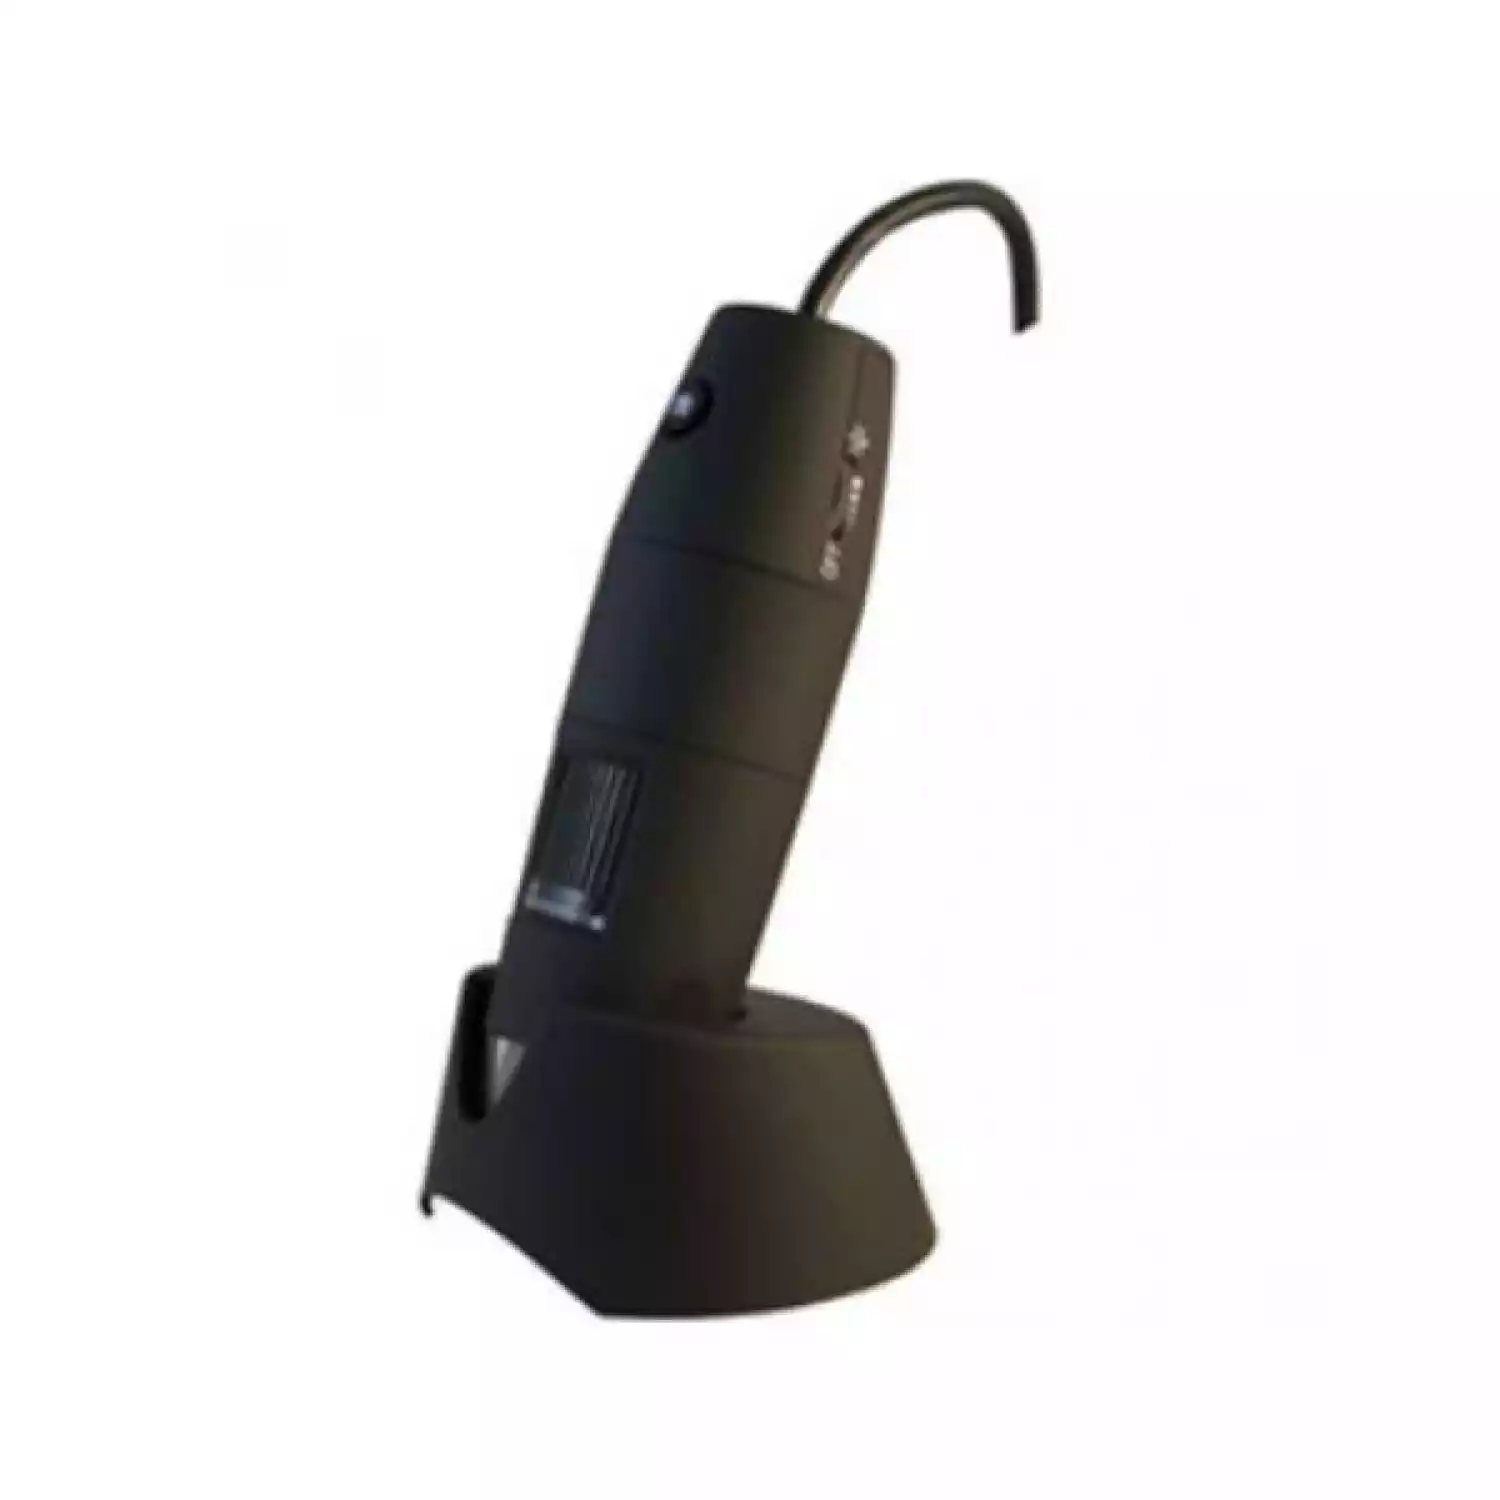 USB-микроскоп PCE MM 200 UV c ультрафиолетовой подсветкой - 1